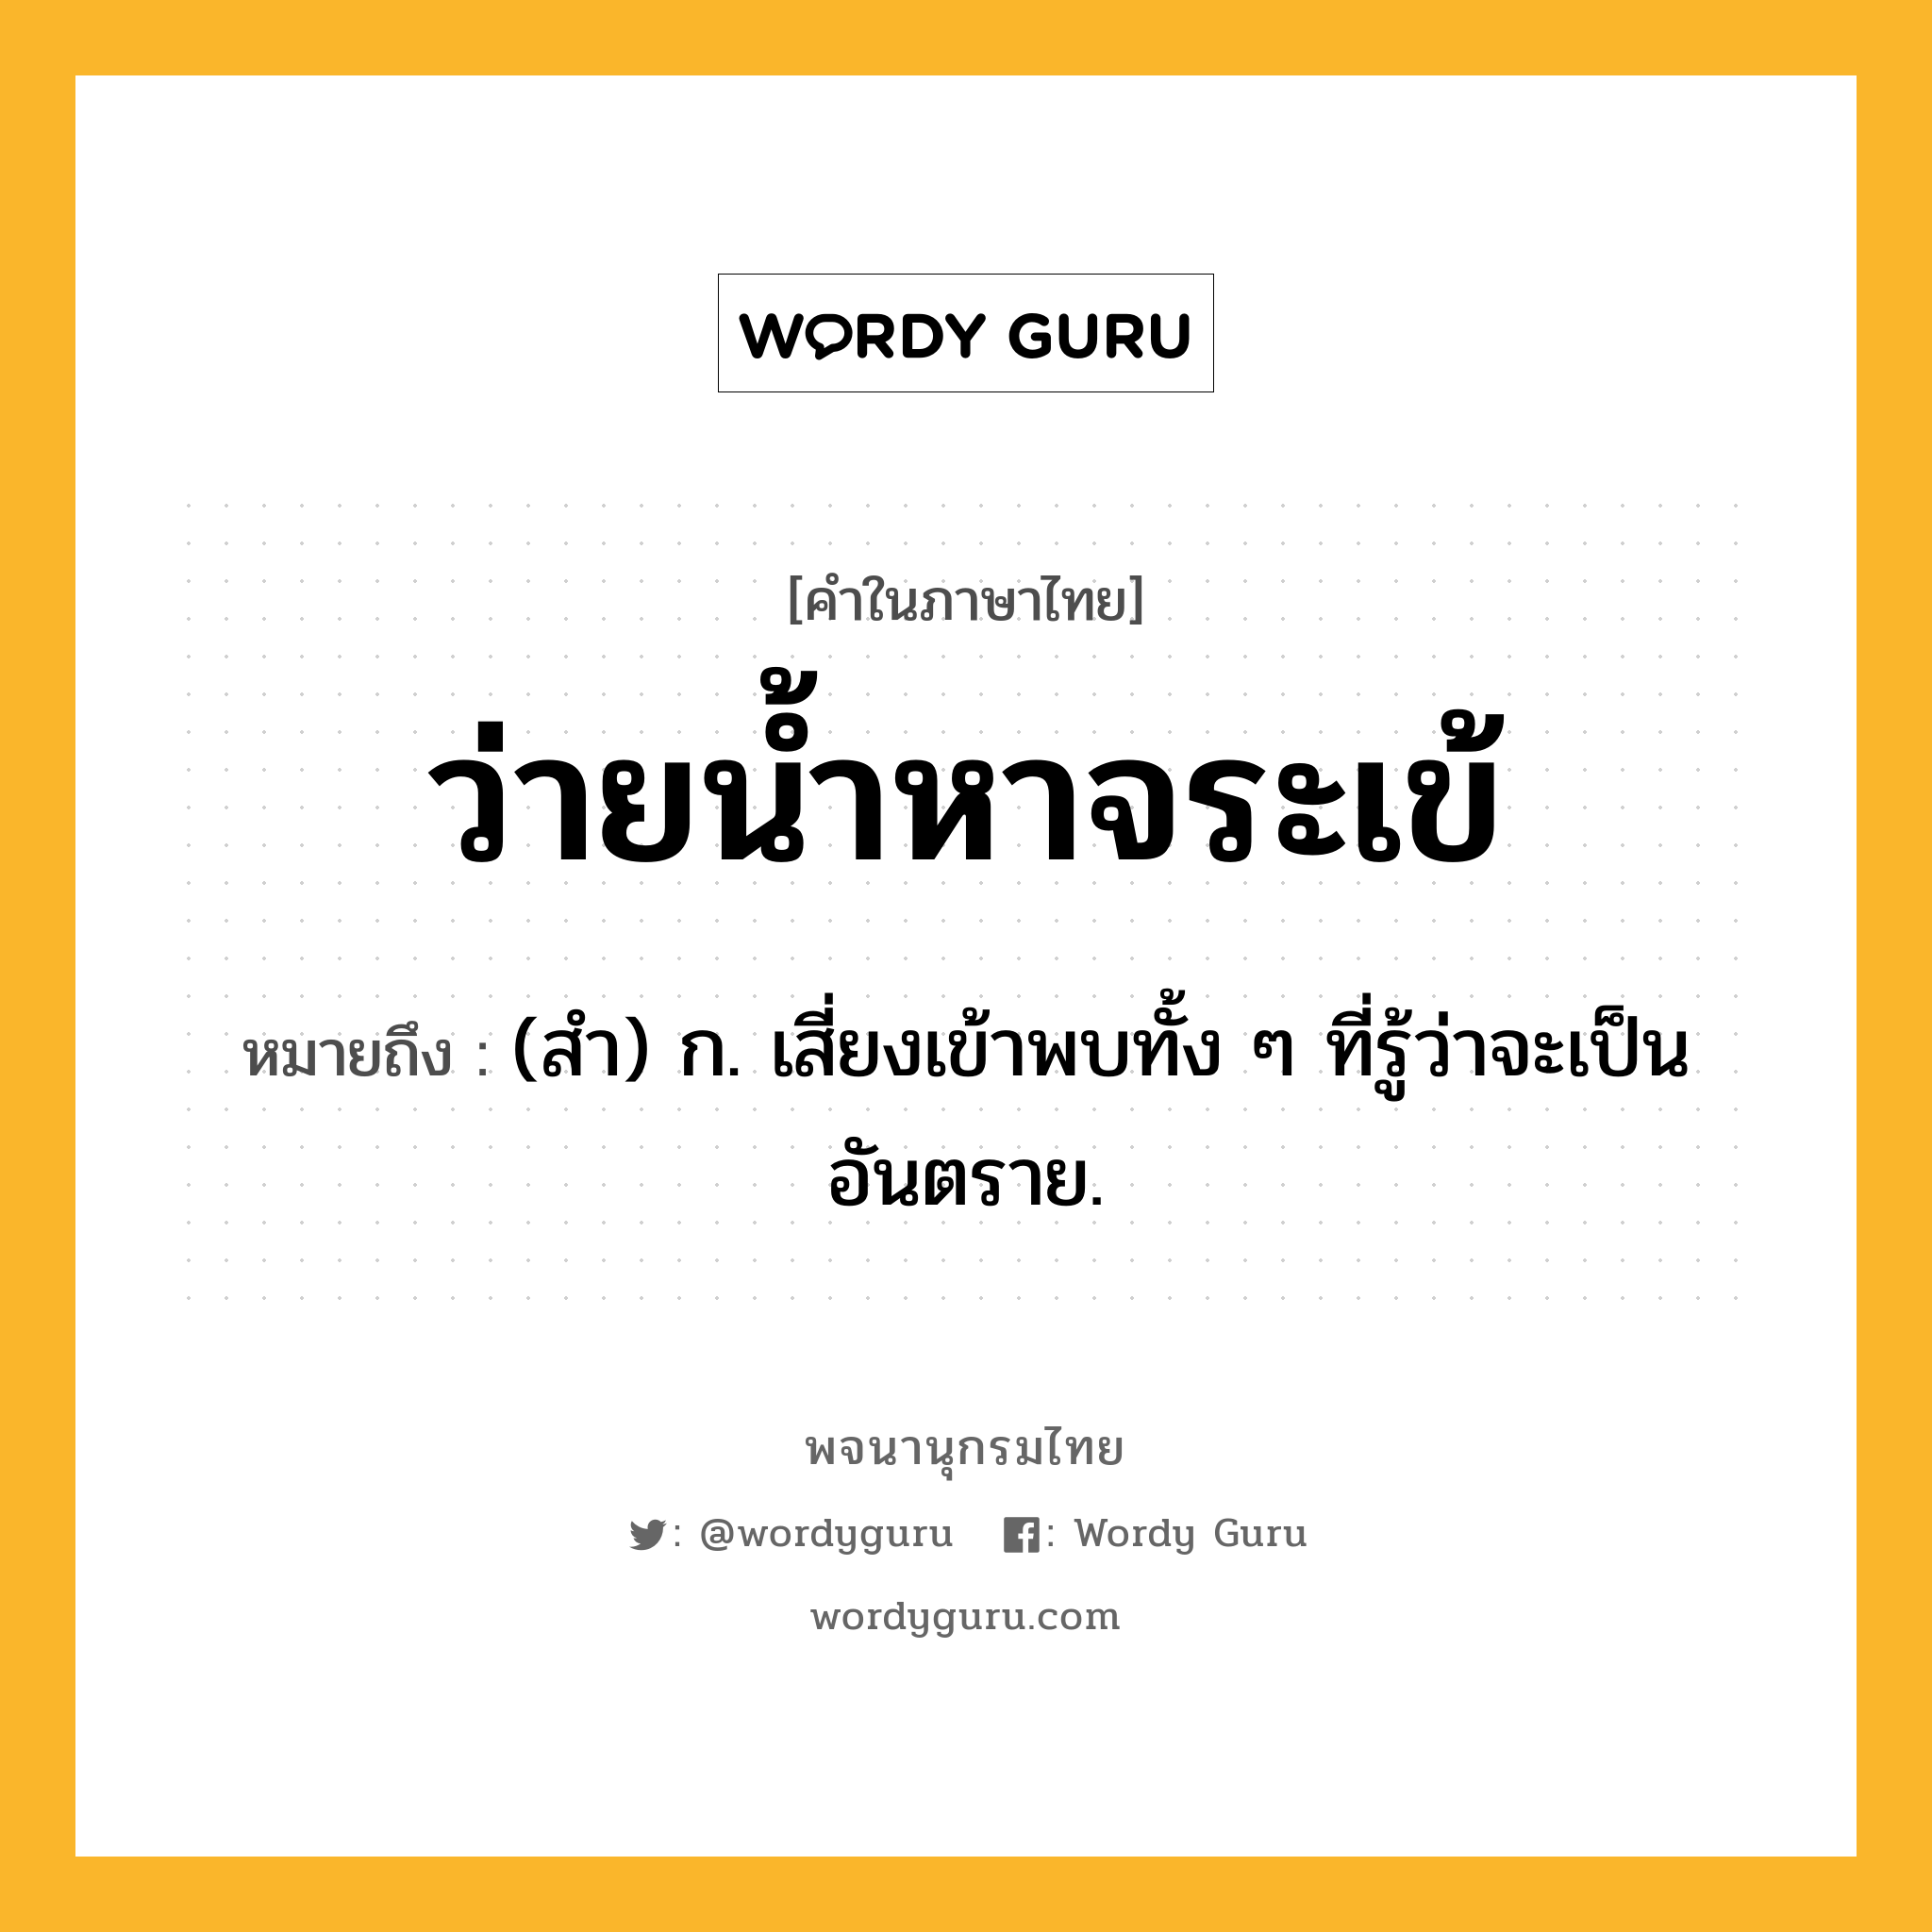 ว่ายน้ำหาจระเข้ ความหมาย หมายถึงอะไร?, คำในภาษาไทย ว่ายน้ำหาจระเข้ หมายถึง (สํา) ก. เสี่ยงเข้าพบทั้ง ๆ ที่รู้ว่าจะเป็นอันตราย.